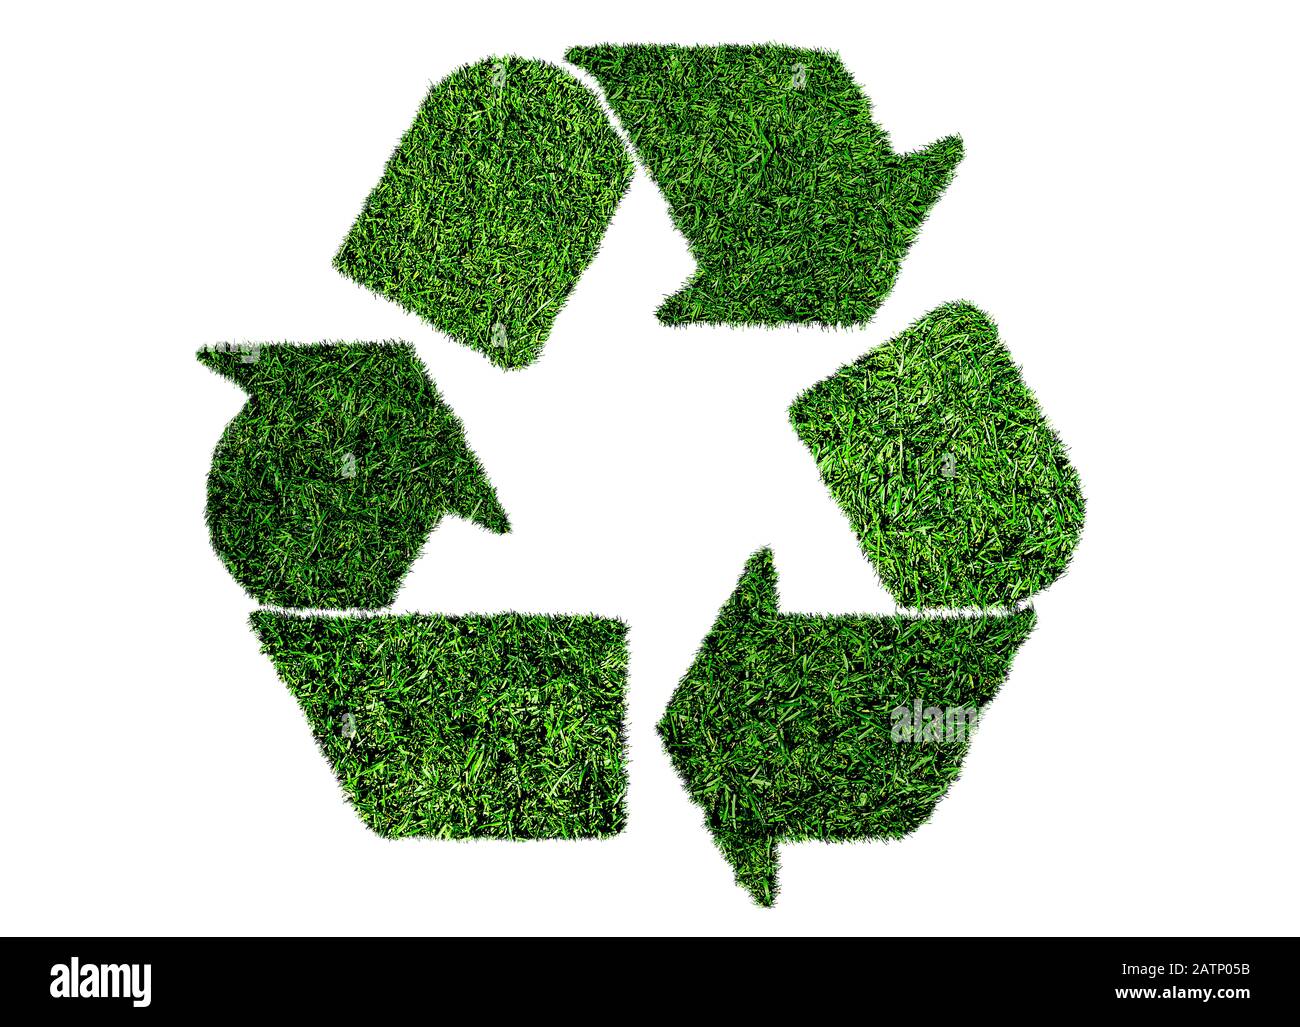 symbole de recyclage de l'herbe verte luxuriante, concept de durabilité isolé sur fond blanc Banque D'Images